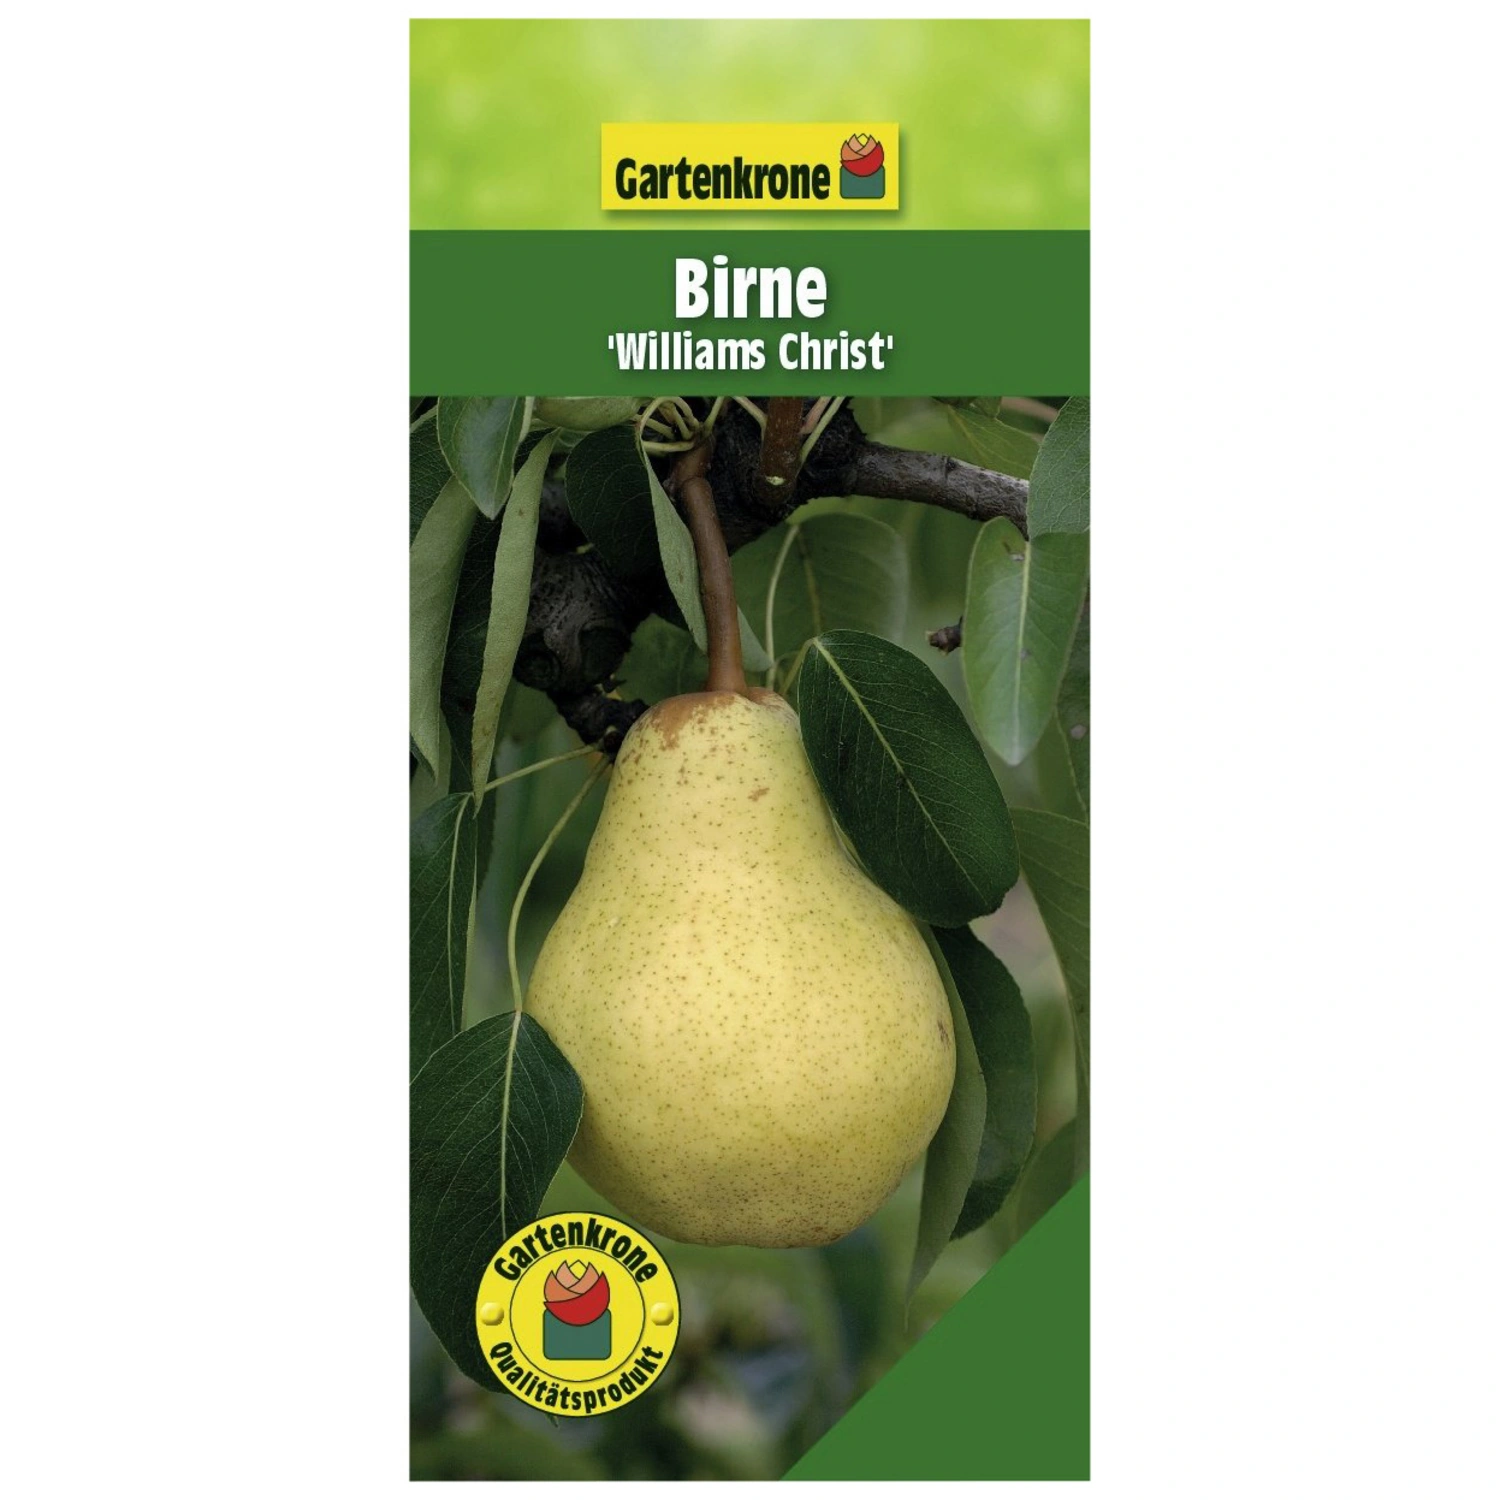 Gartenkrone Birne, Pyrus Christ«, »Williams communis süß Früchte